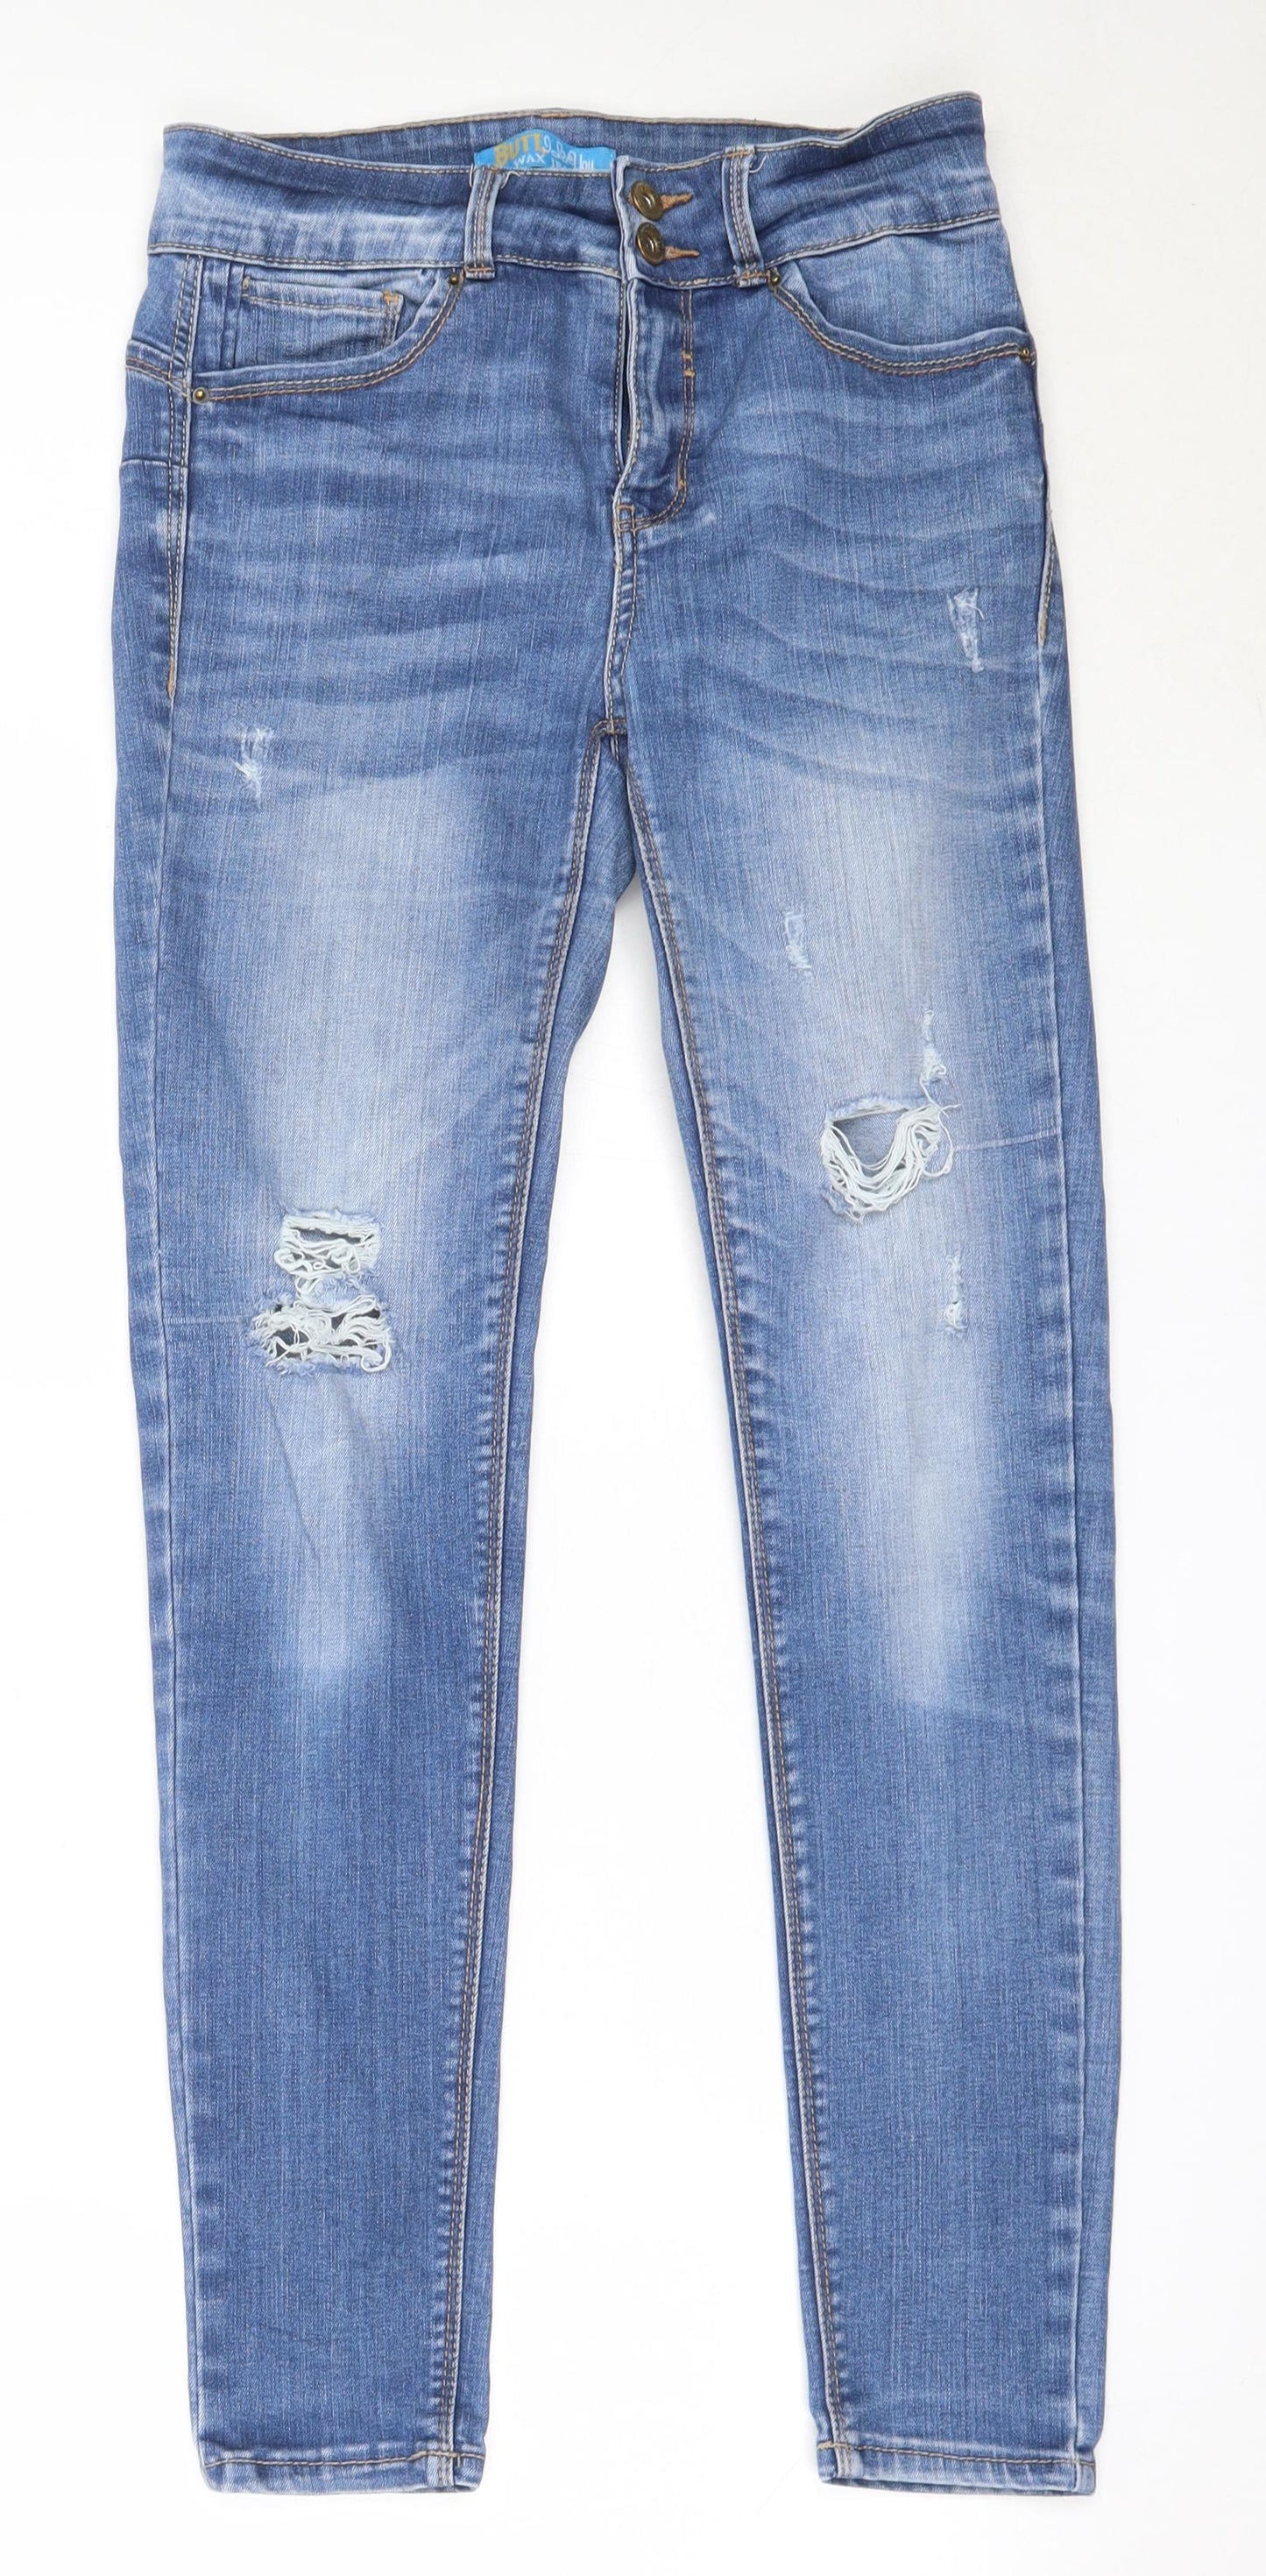 WAX JEAN Womens Blue  Cotton Skinny Jeans Size 28 in L27.5 in Regular